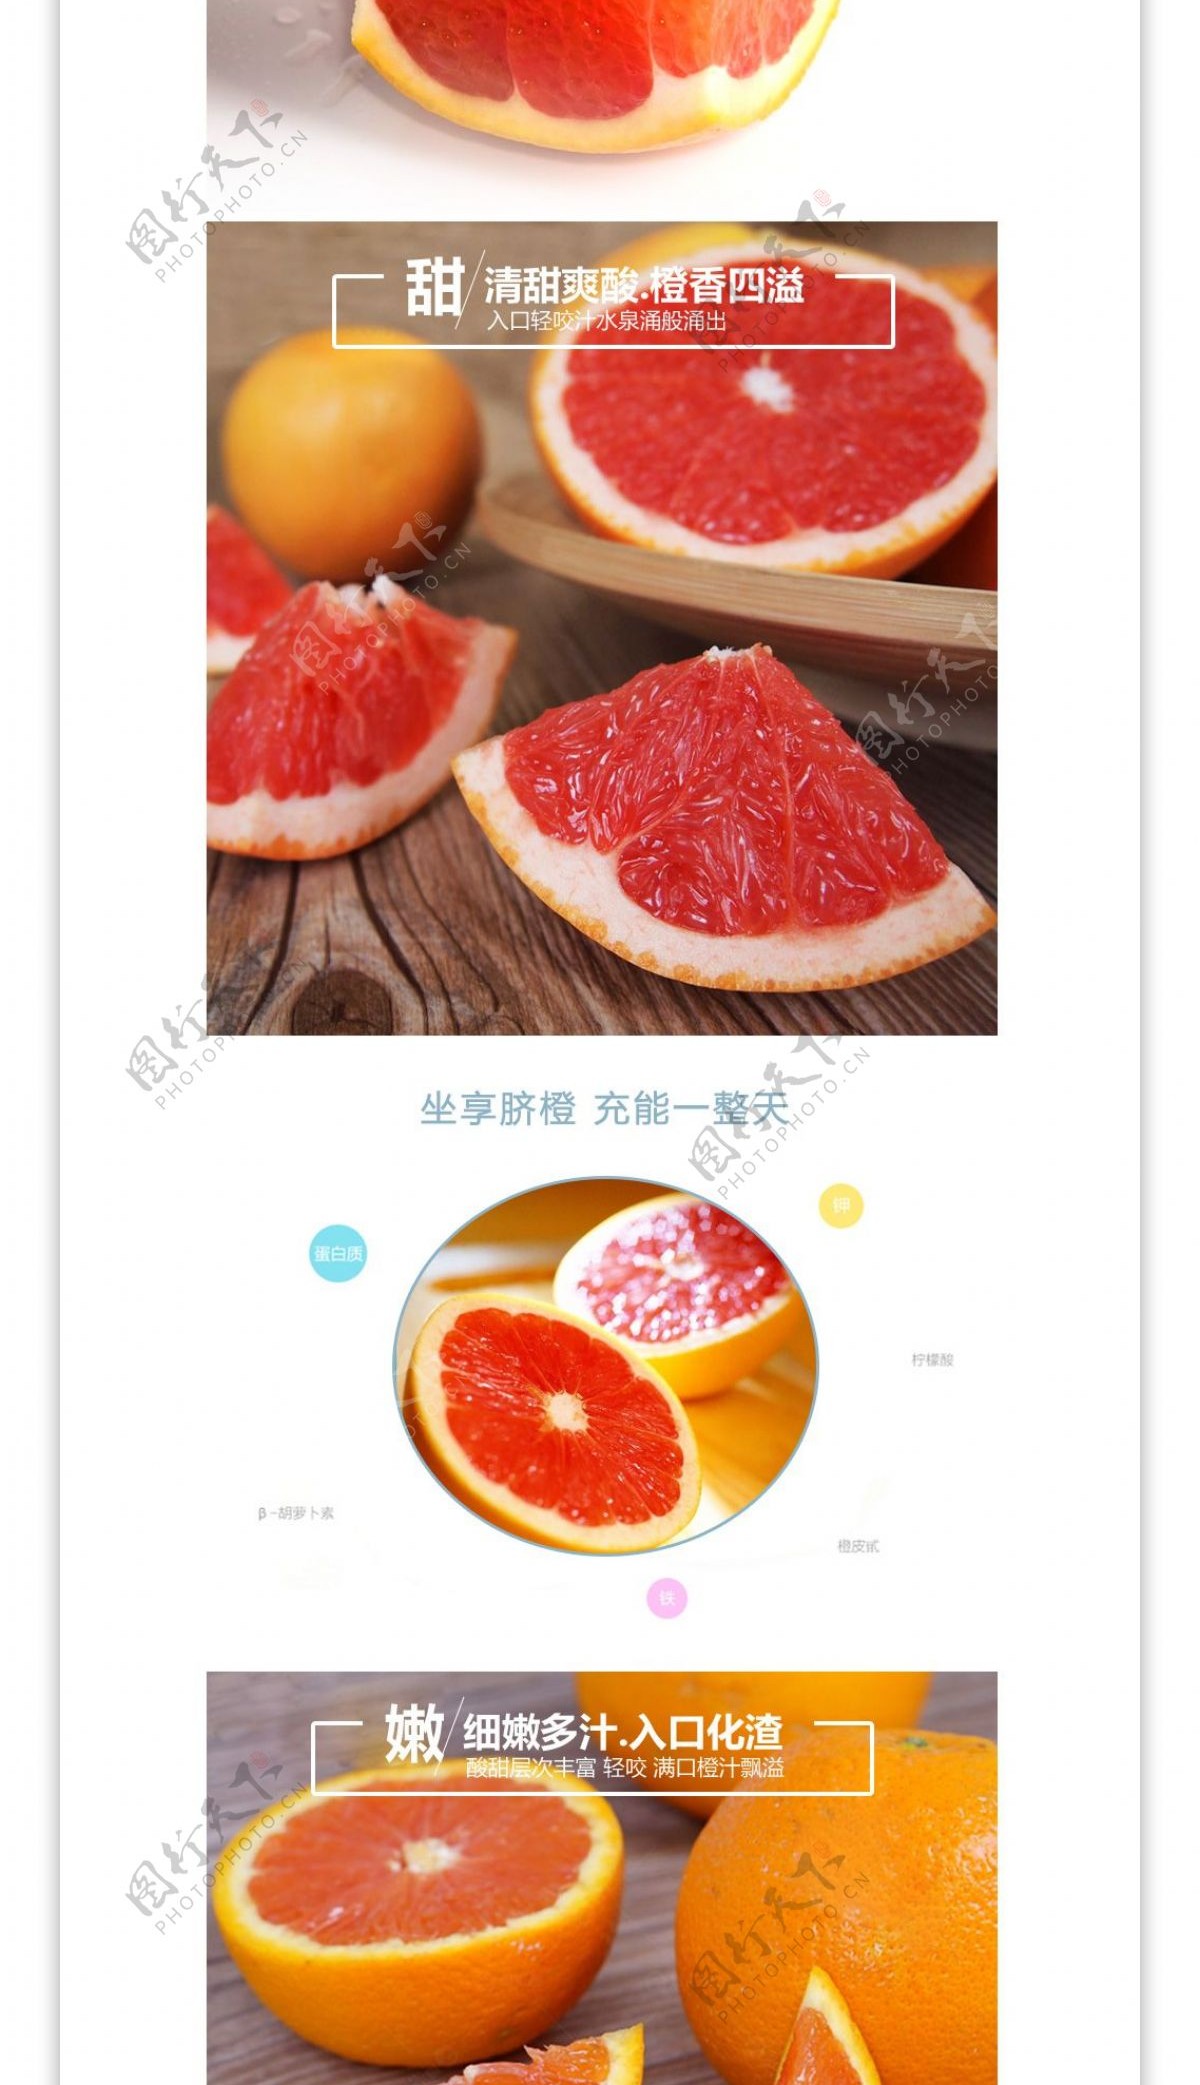 澳洲红肉橙新鲜水果橙子详情页模版